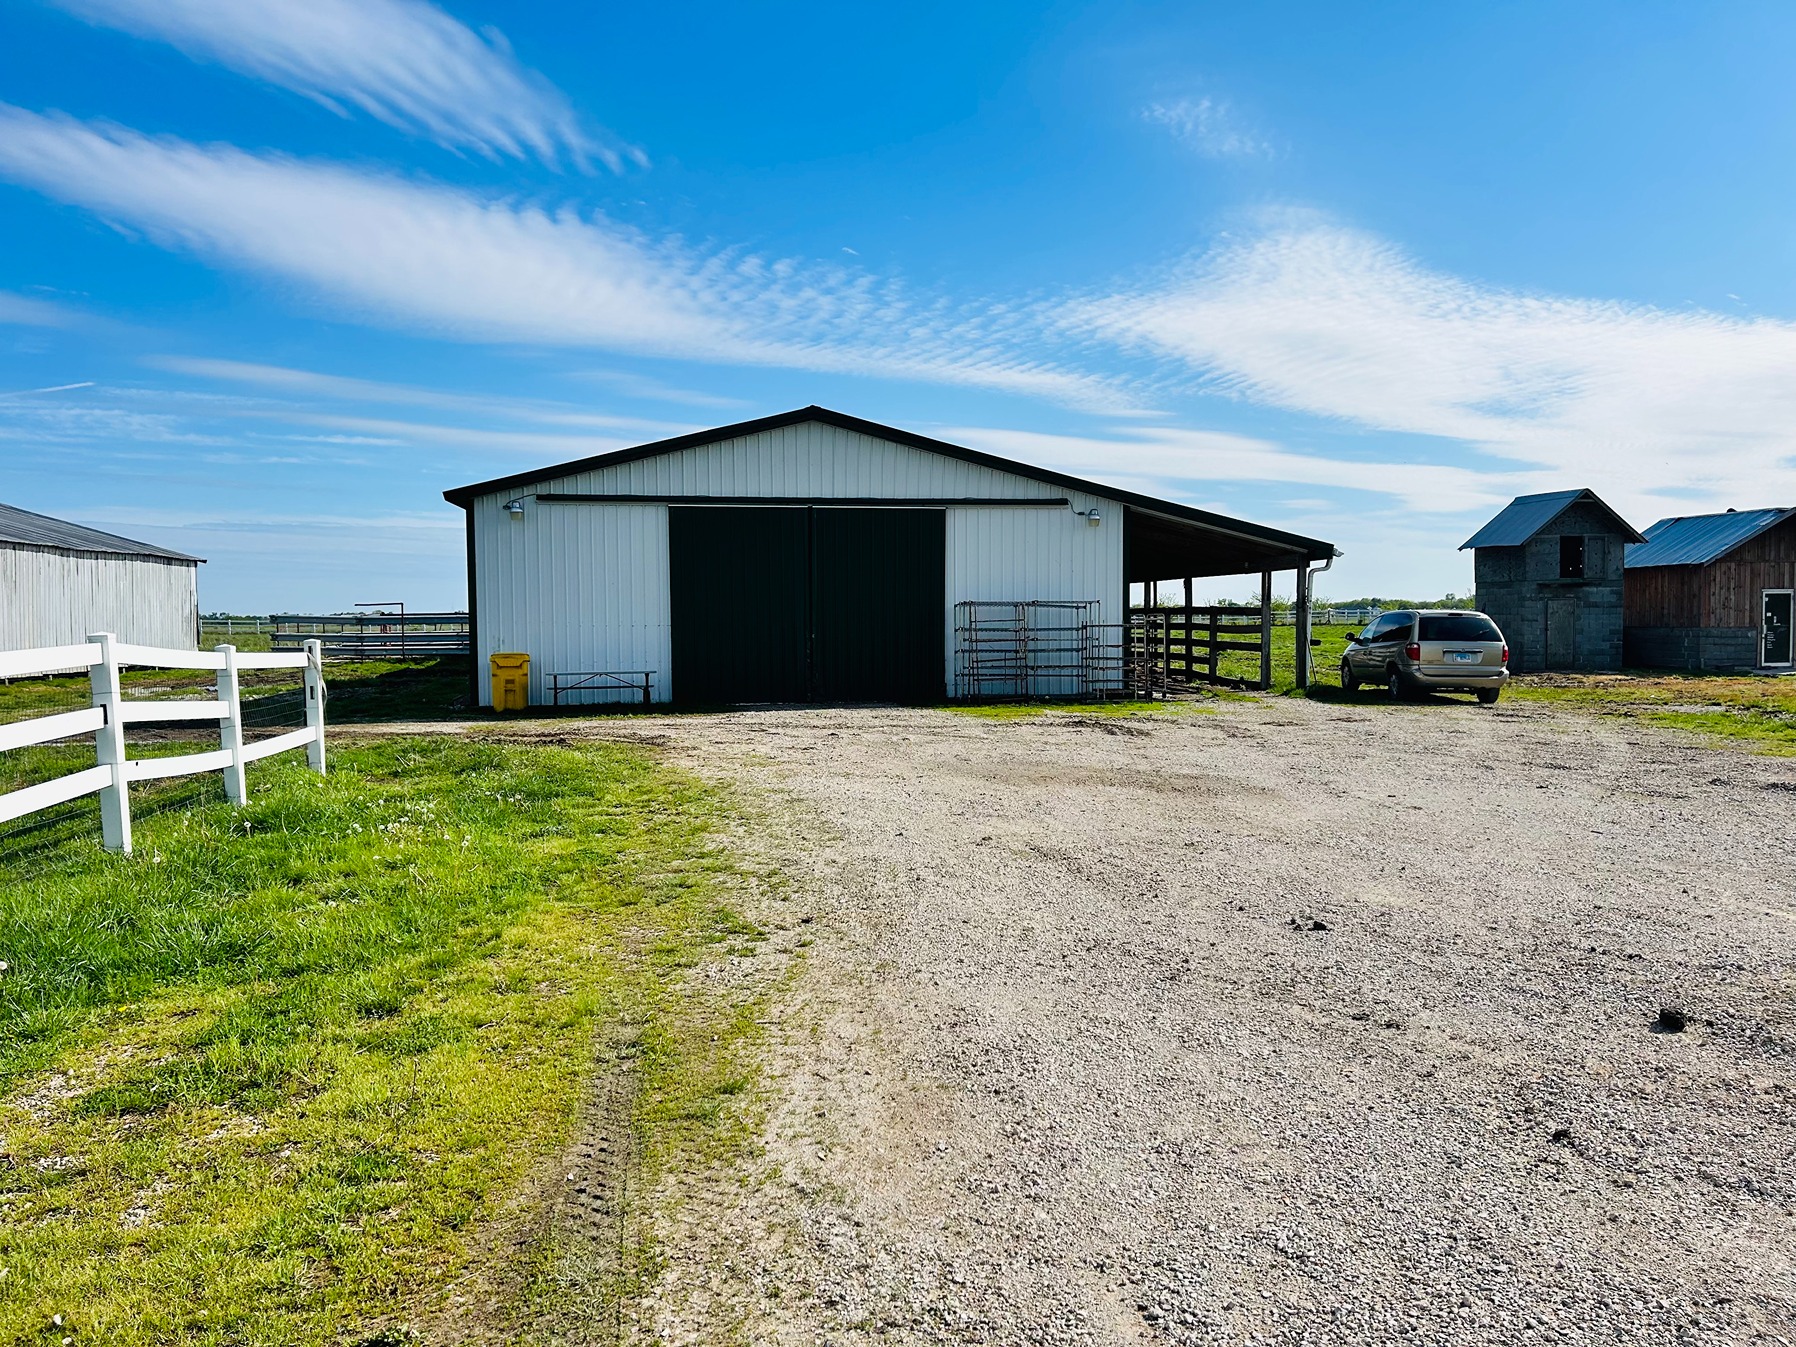 8ÃÂ± Acres Pasture Ground for Sale with Multiple Outbuildings Ã¢ÂÂ Madison County